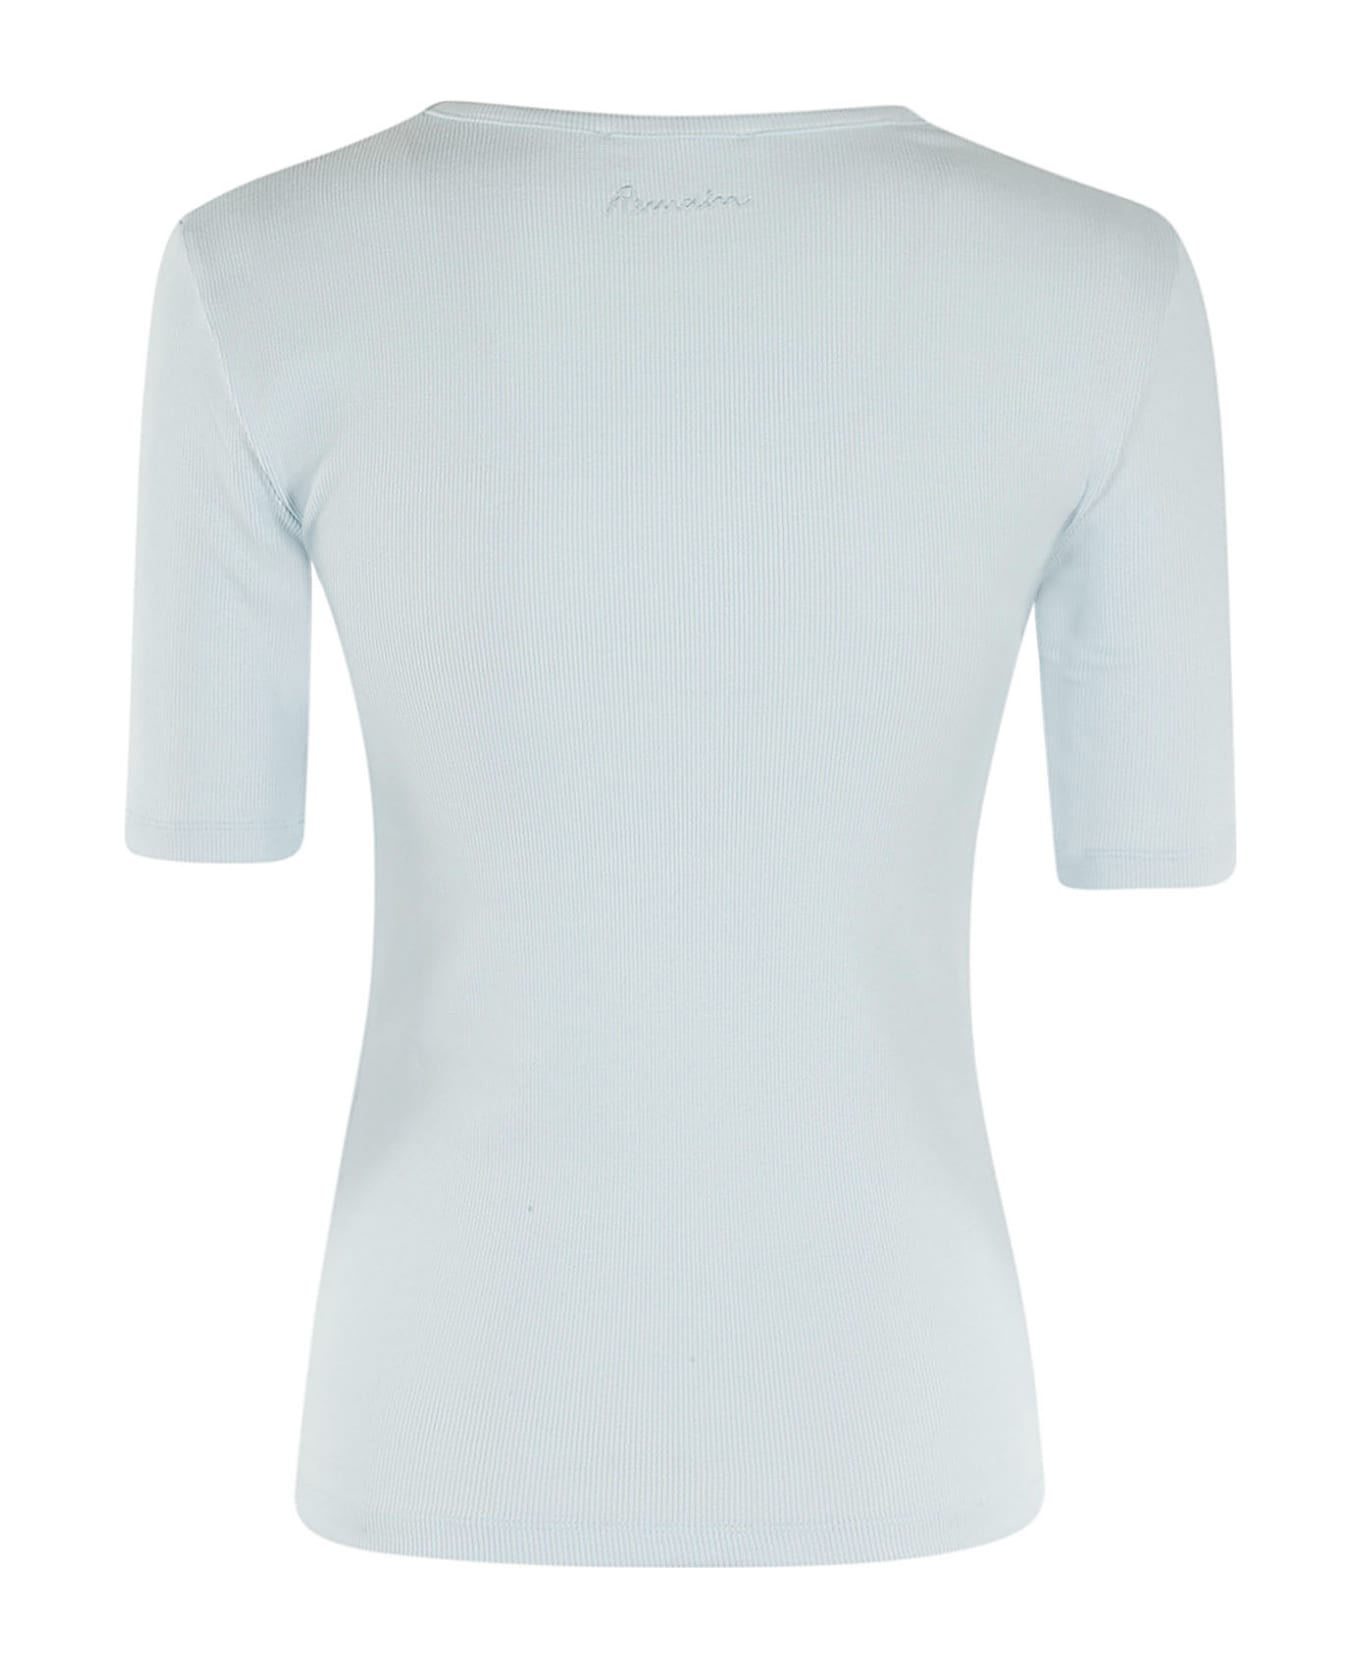 REMAIN Birger Christensen Jersey Short Sleeve T Shirt